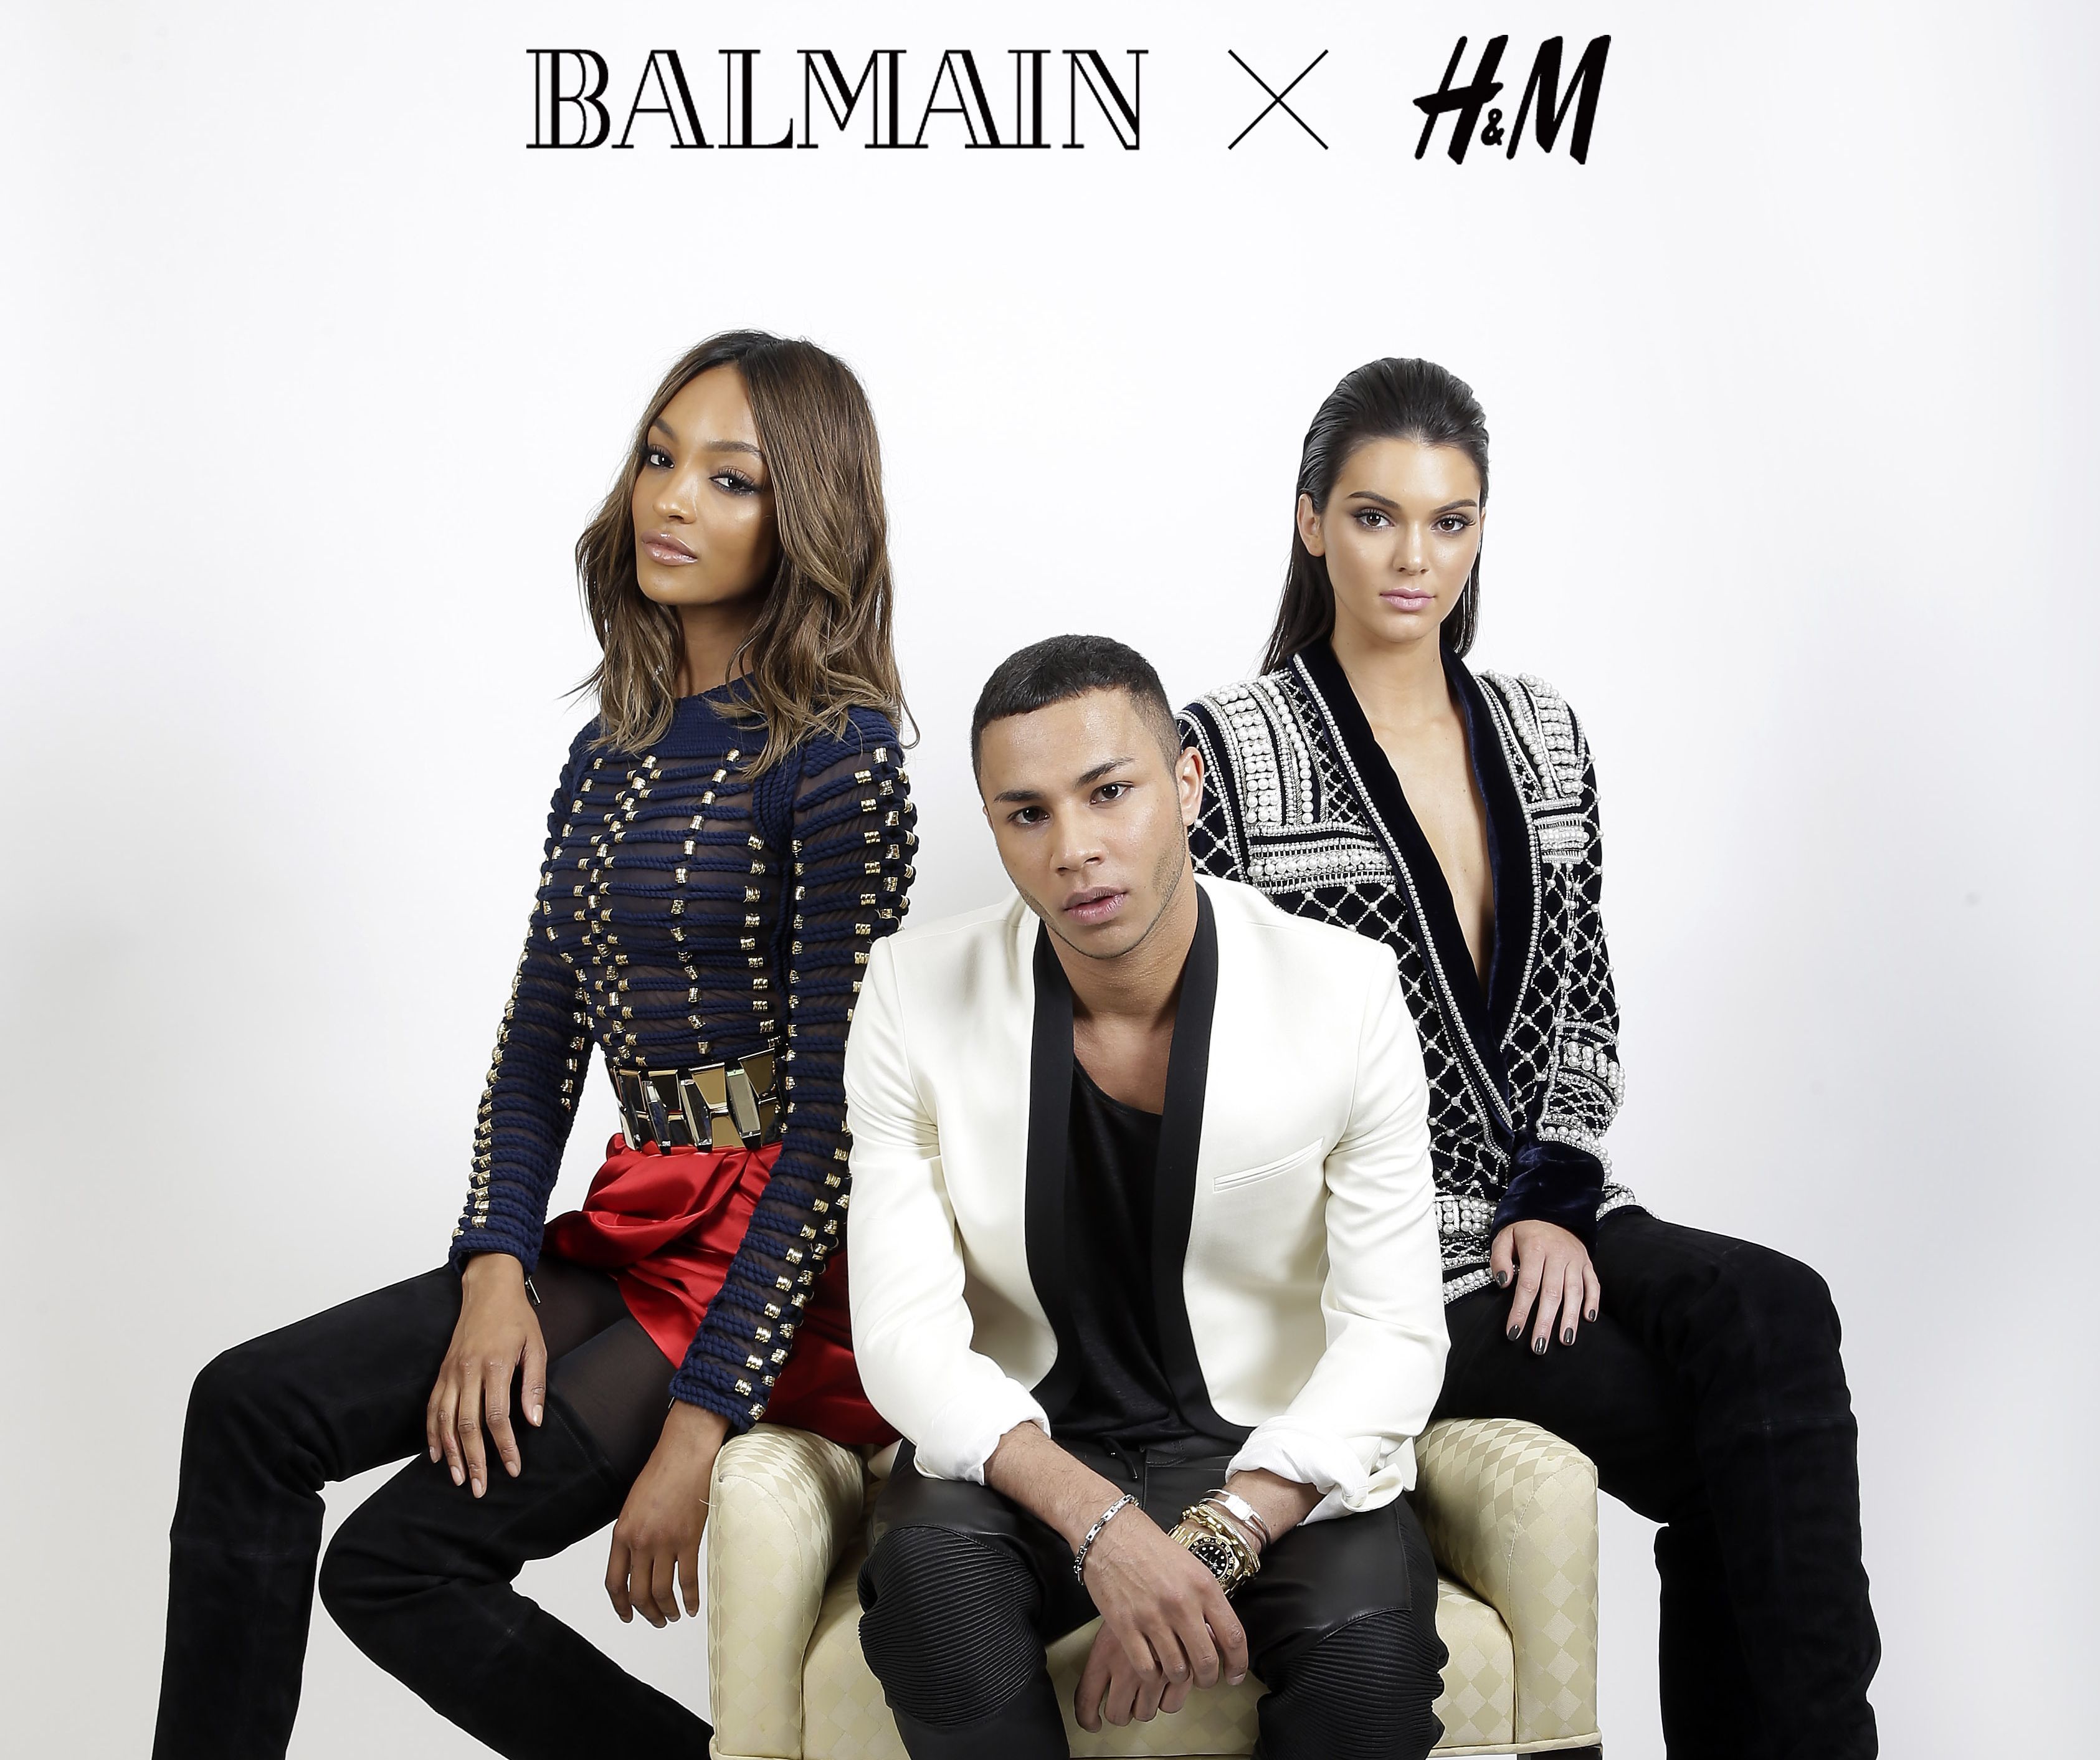 Balmain X H&M: Što sve možemo očekivati?